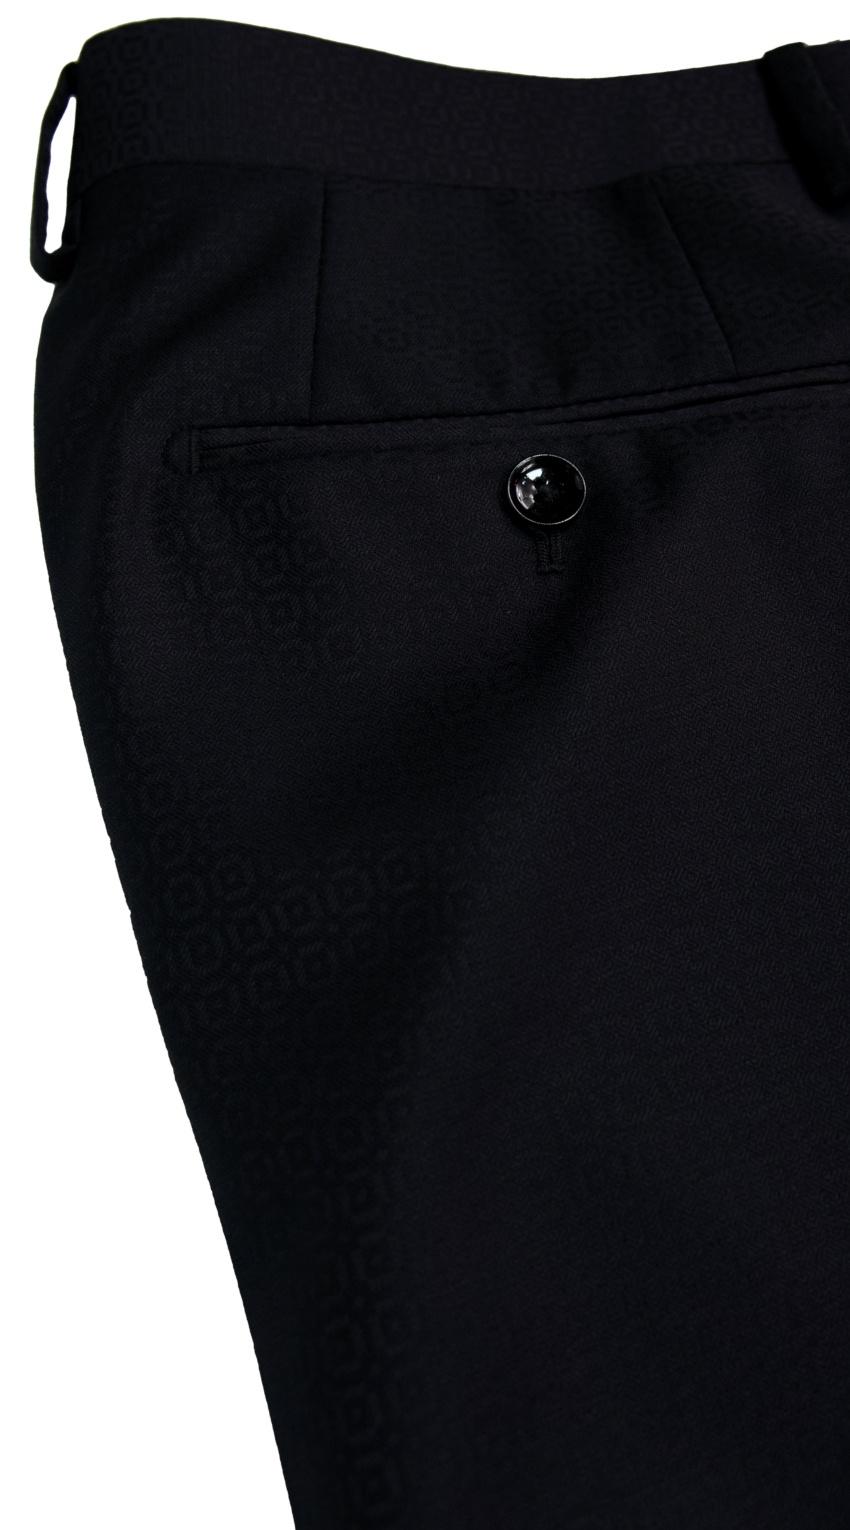 Black Circular Texture Suit